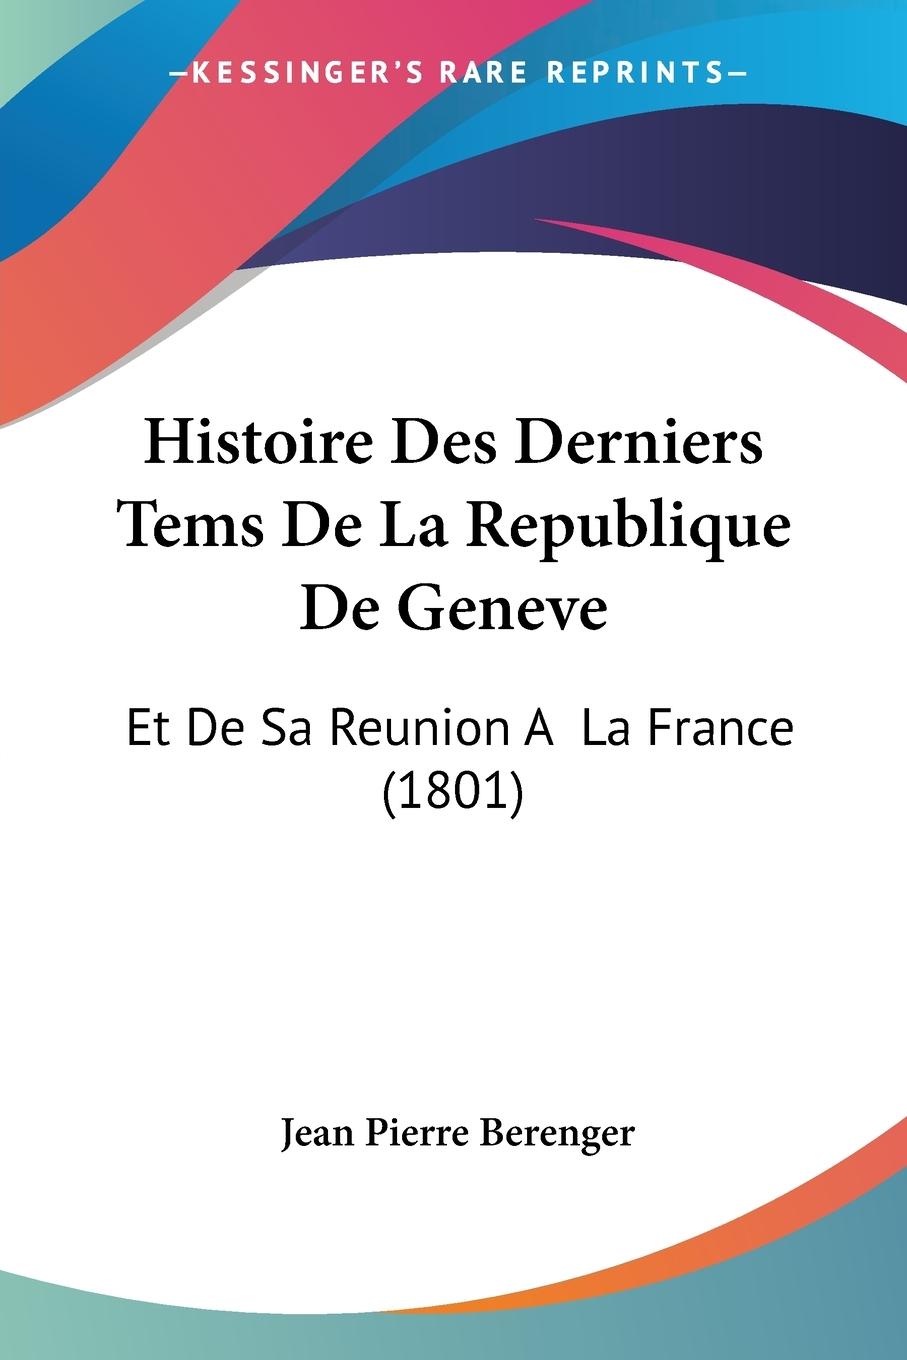 Histoire Des Derniers Tems De La Republique De Geneve - Berenger, Jean Pierre